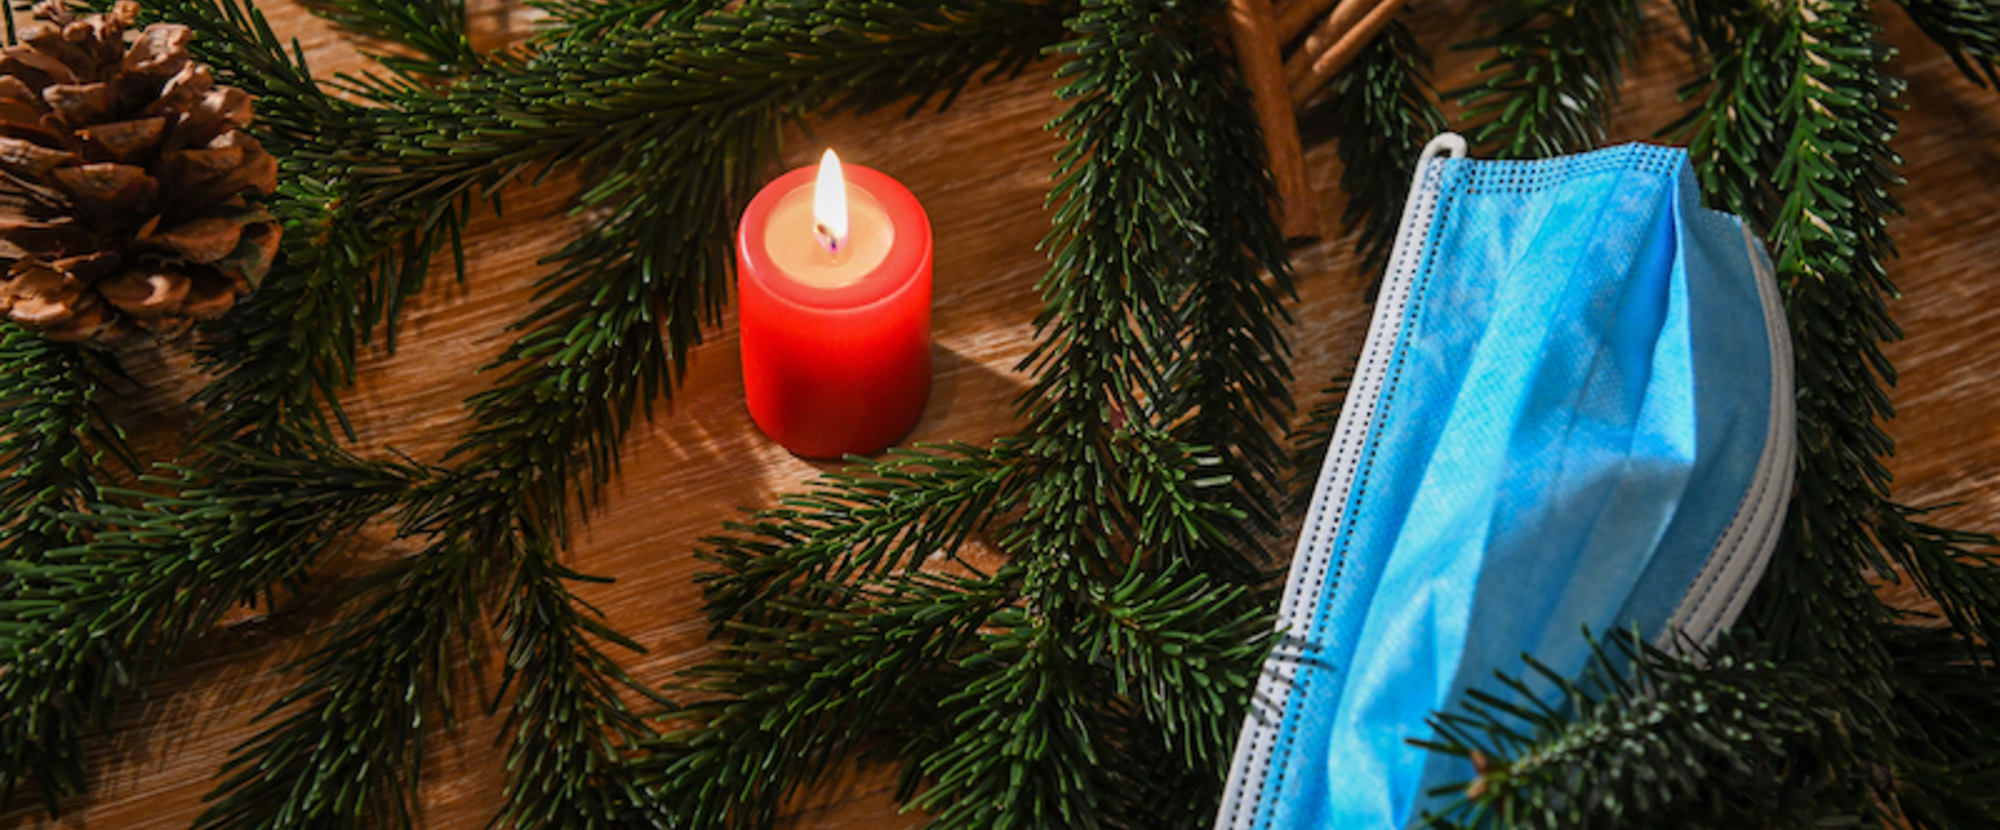 Eine Maske liegt in einer weihnachtlichen Dekoration aus Tannenzweigen und Tannenzapfen am 5. Dezember 2020 in Bonn. In der Mitte brennt eine rote Kerze.